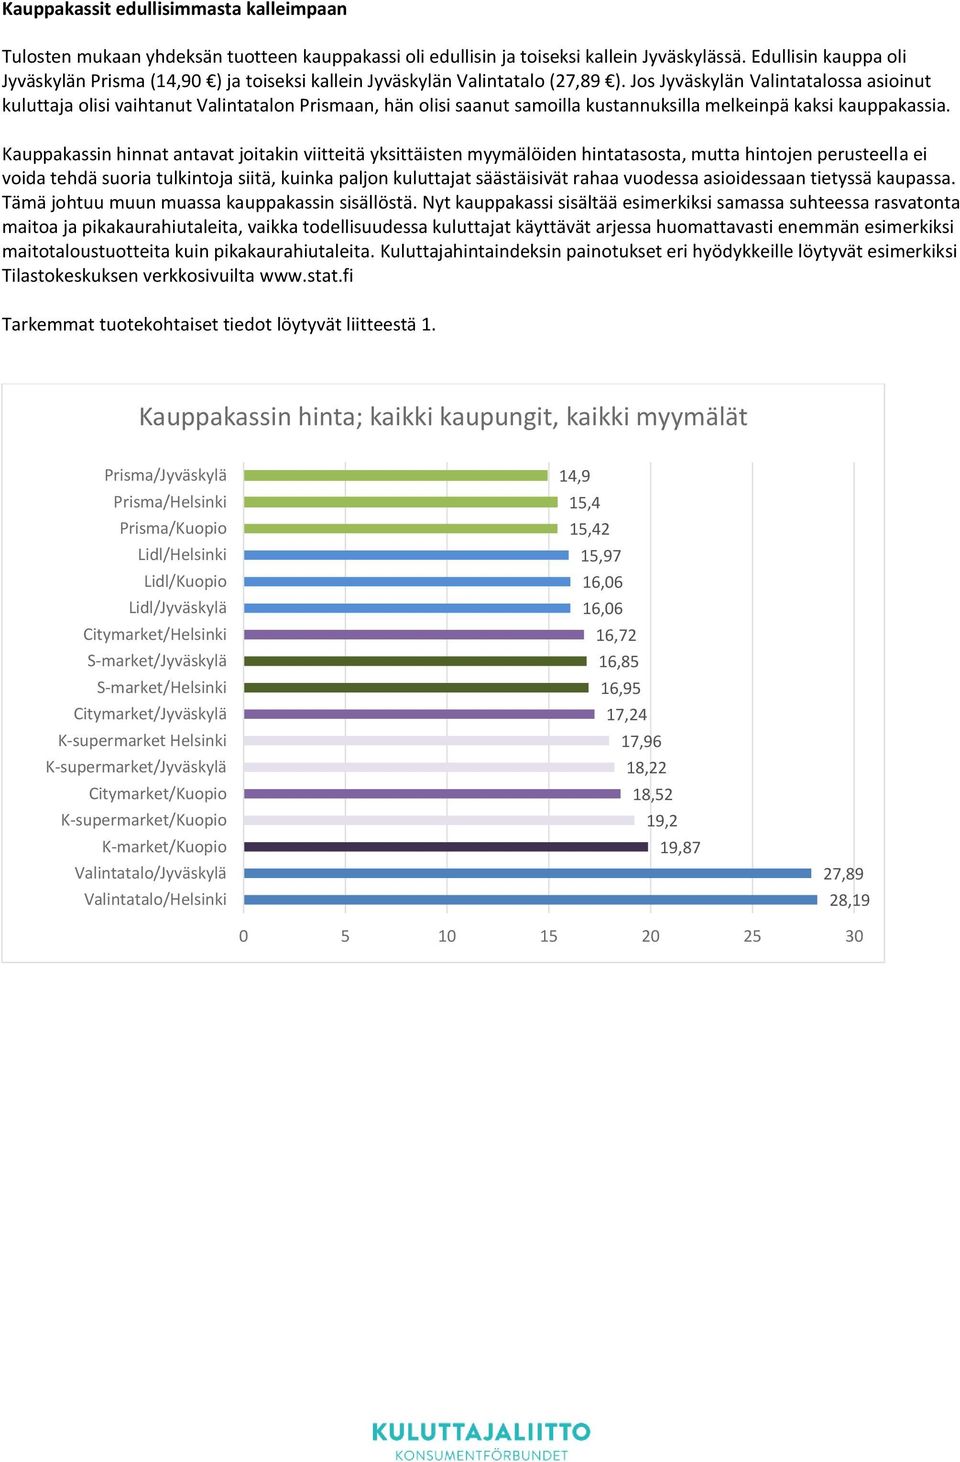 Jos Jyväskylän Valintatalossa asioinut kuluttaja olisi vaihtanut Valintatalon Prismaan, hän olisi saanut samoilla kustannuksilla melkeinpä kaksi kauppakassia.